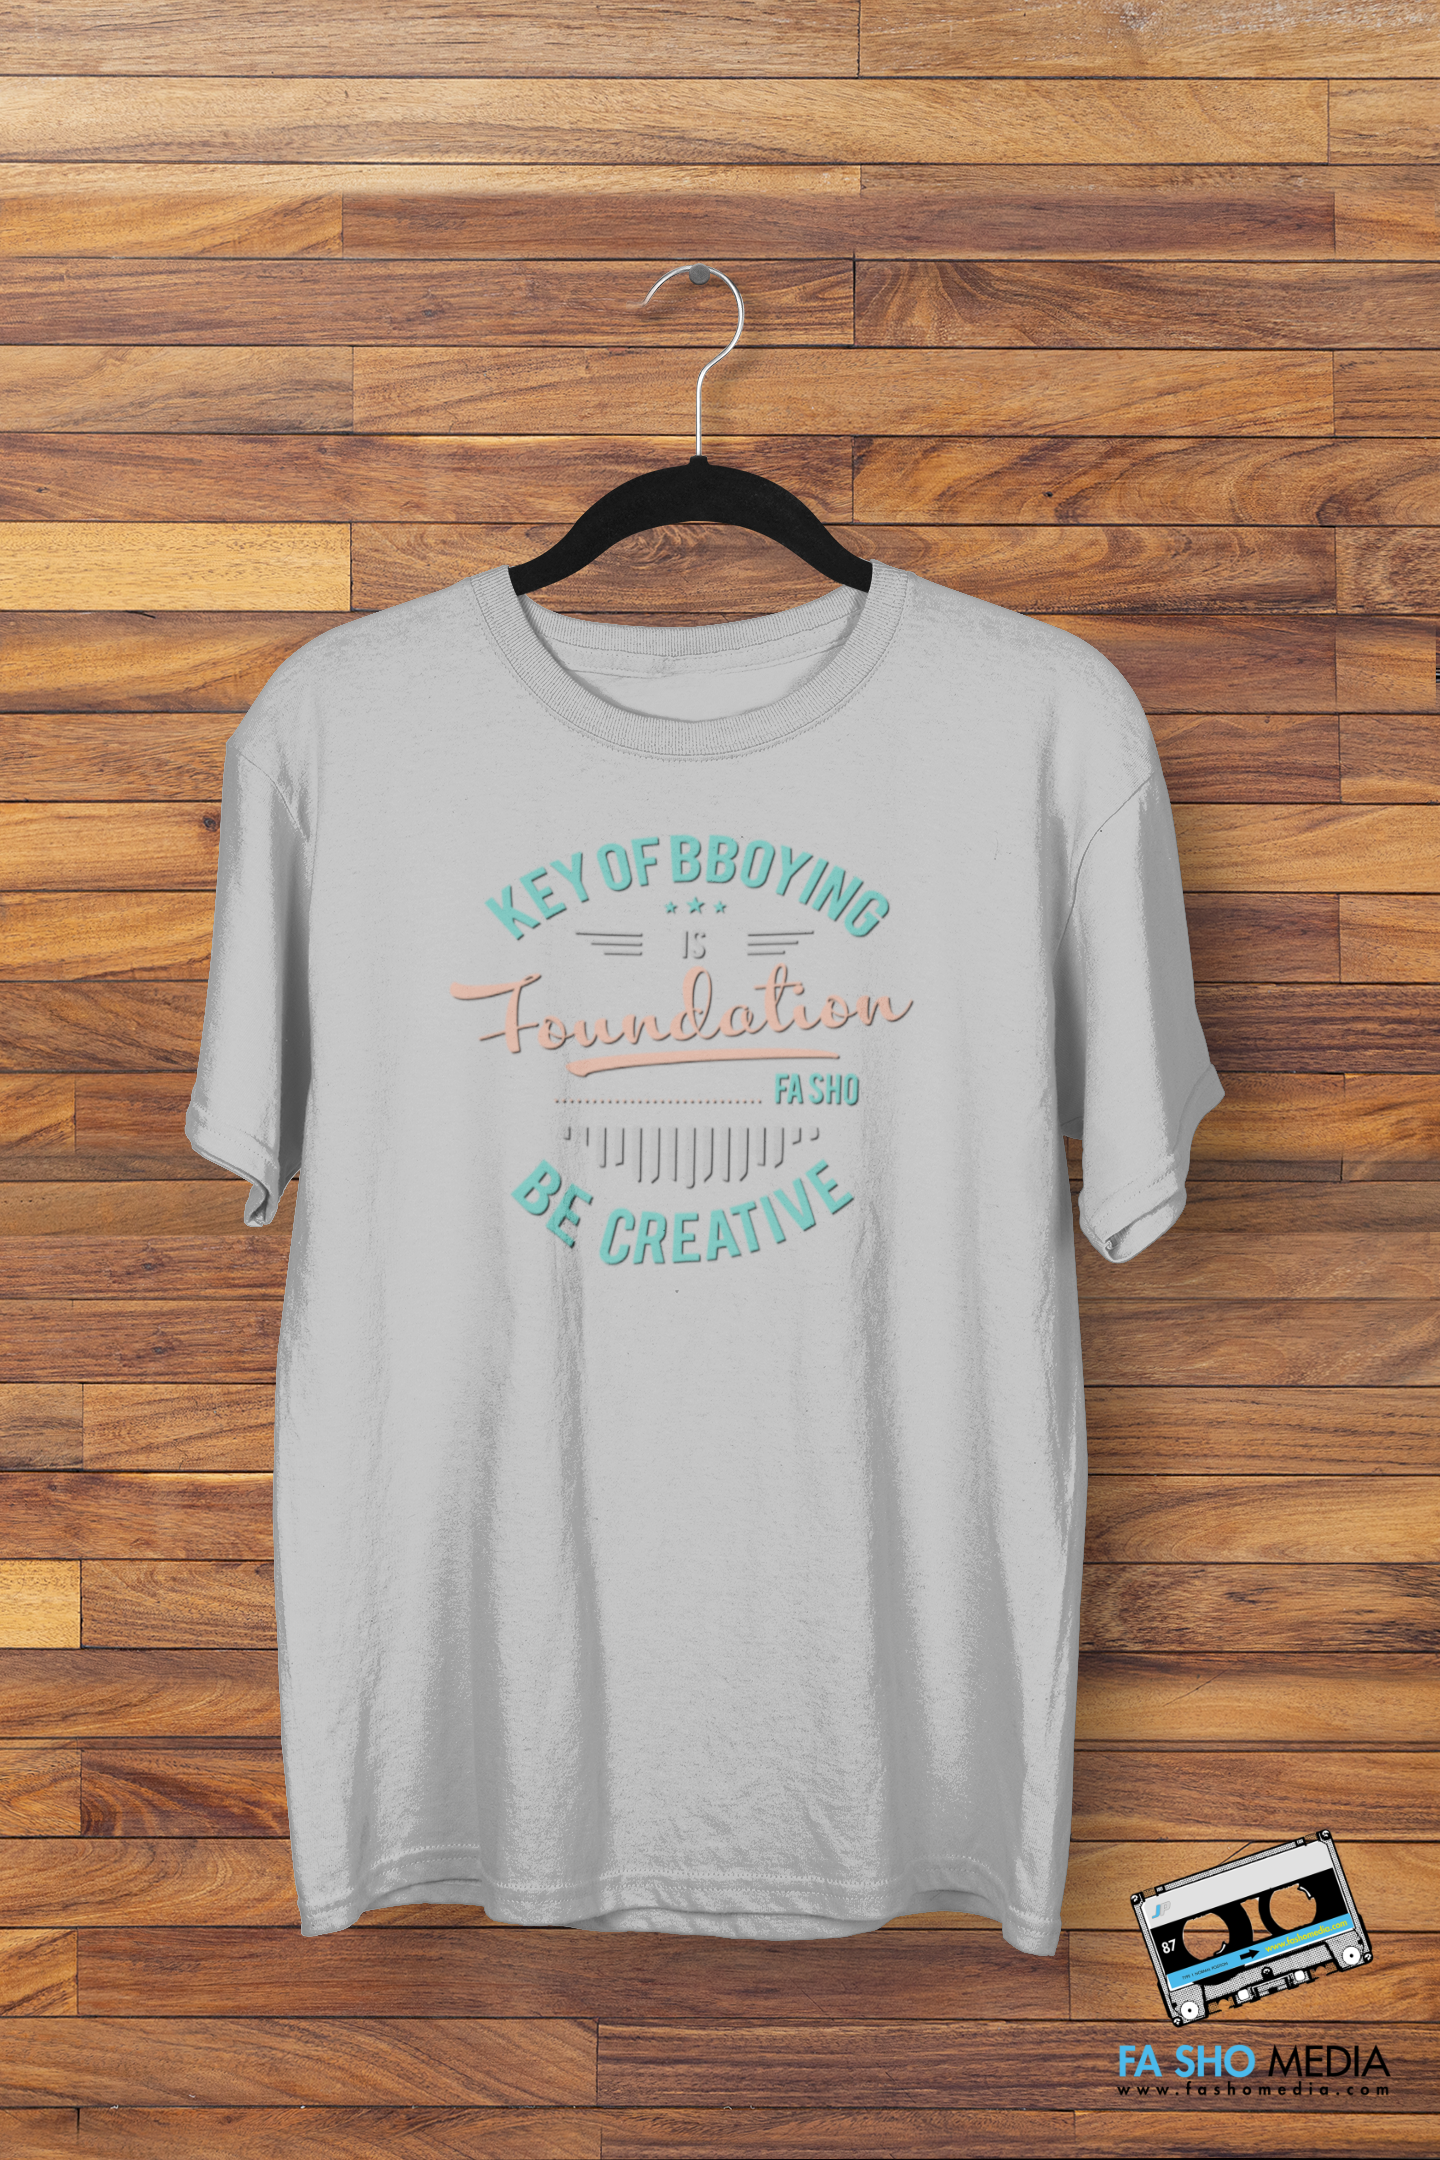 Bboy Foundation Shirt